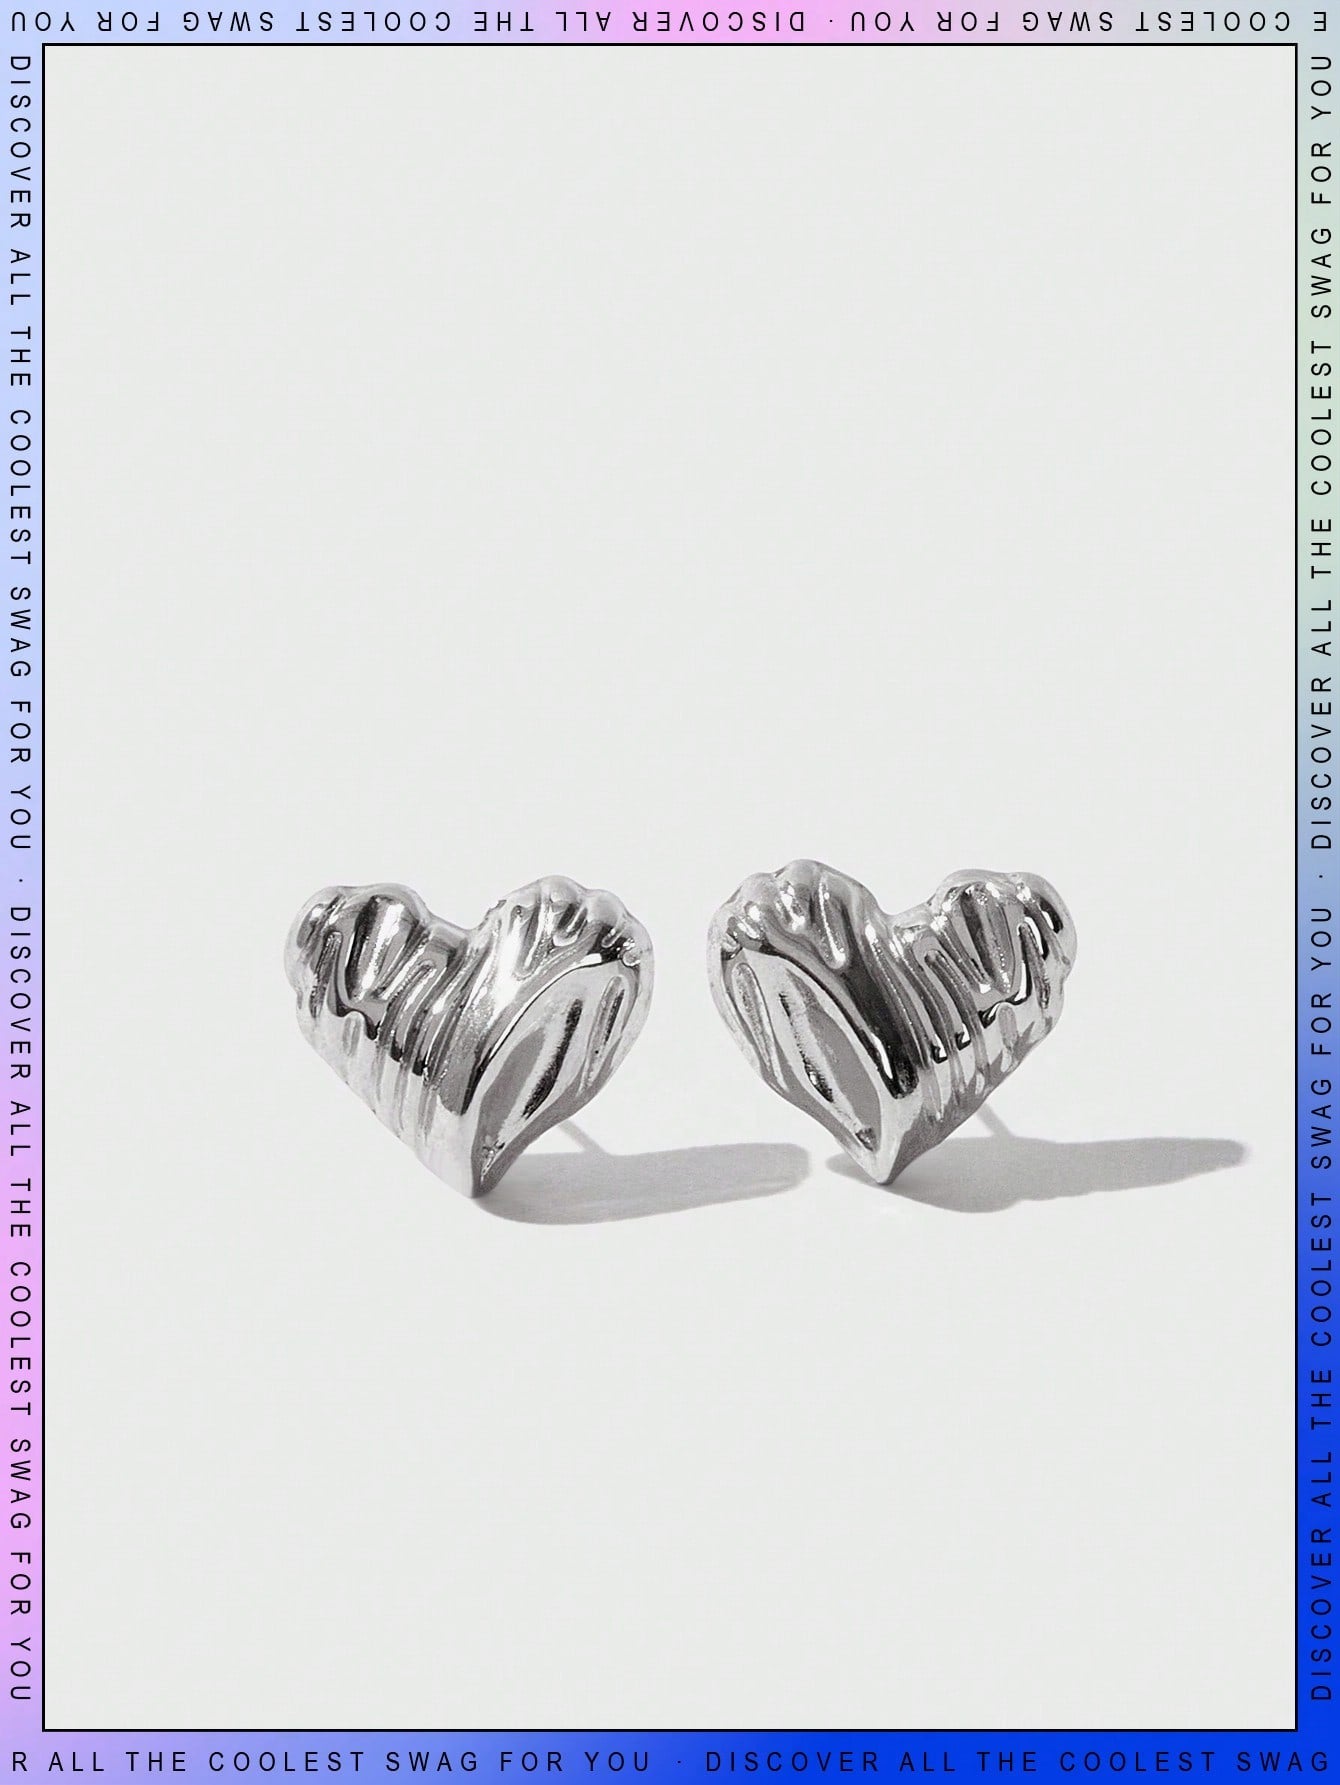 1Pair Light Luxury Elegant Stainless Steel 3D Heart Shaped Stud Earring